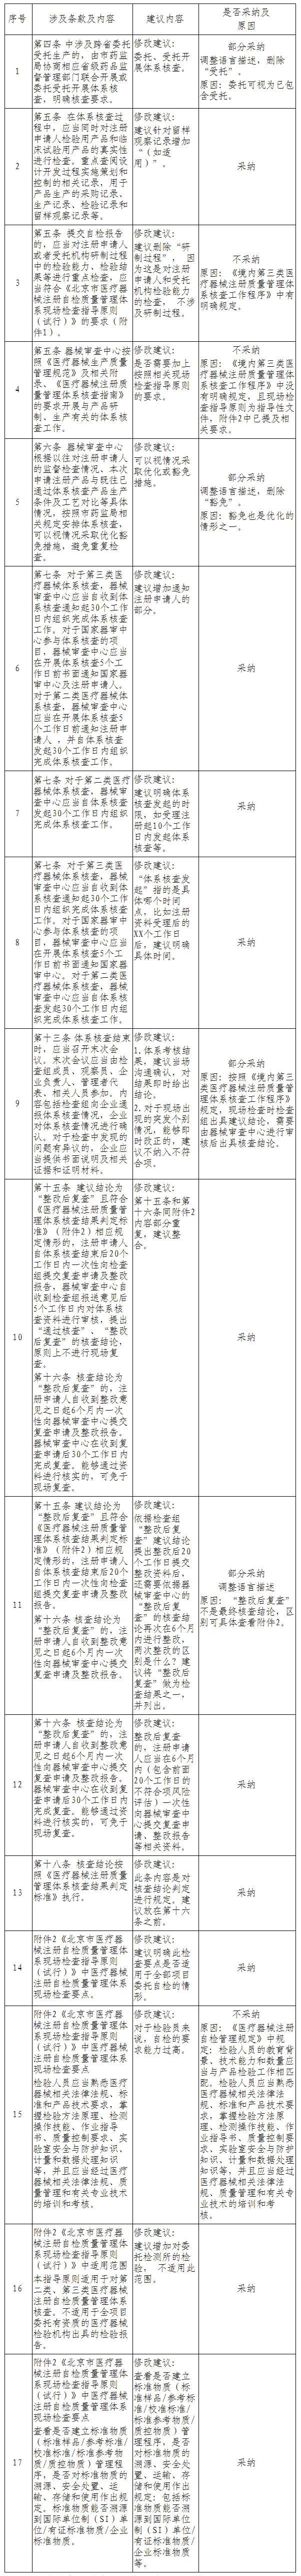 北京市药品监督管理局关于对《北京市医疗器械注册质量管理体系核查工作程序(征求意见稿)》公开征集意见的反馈